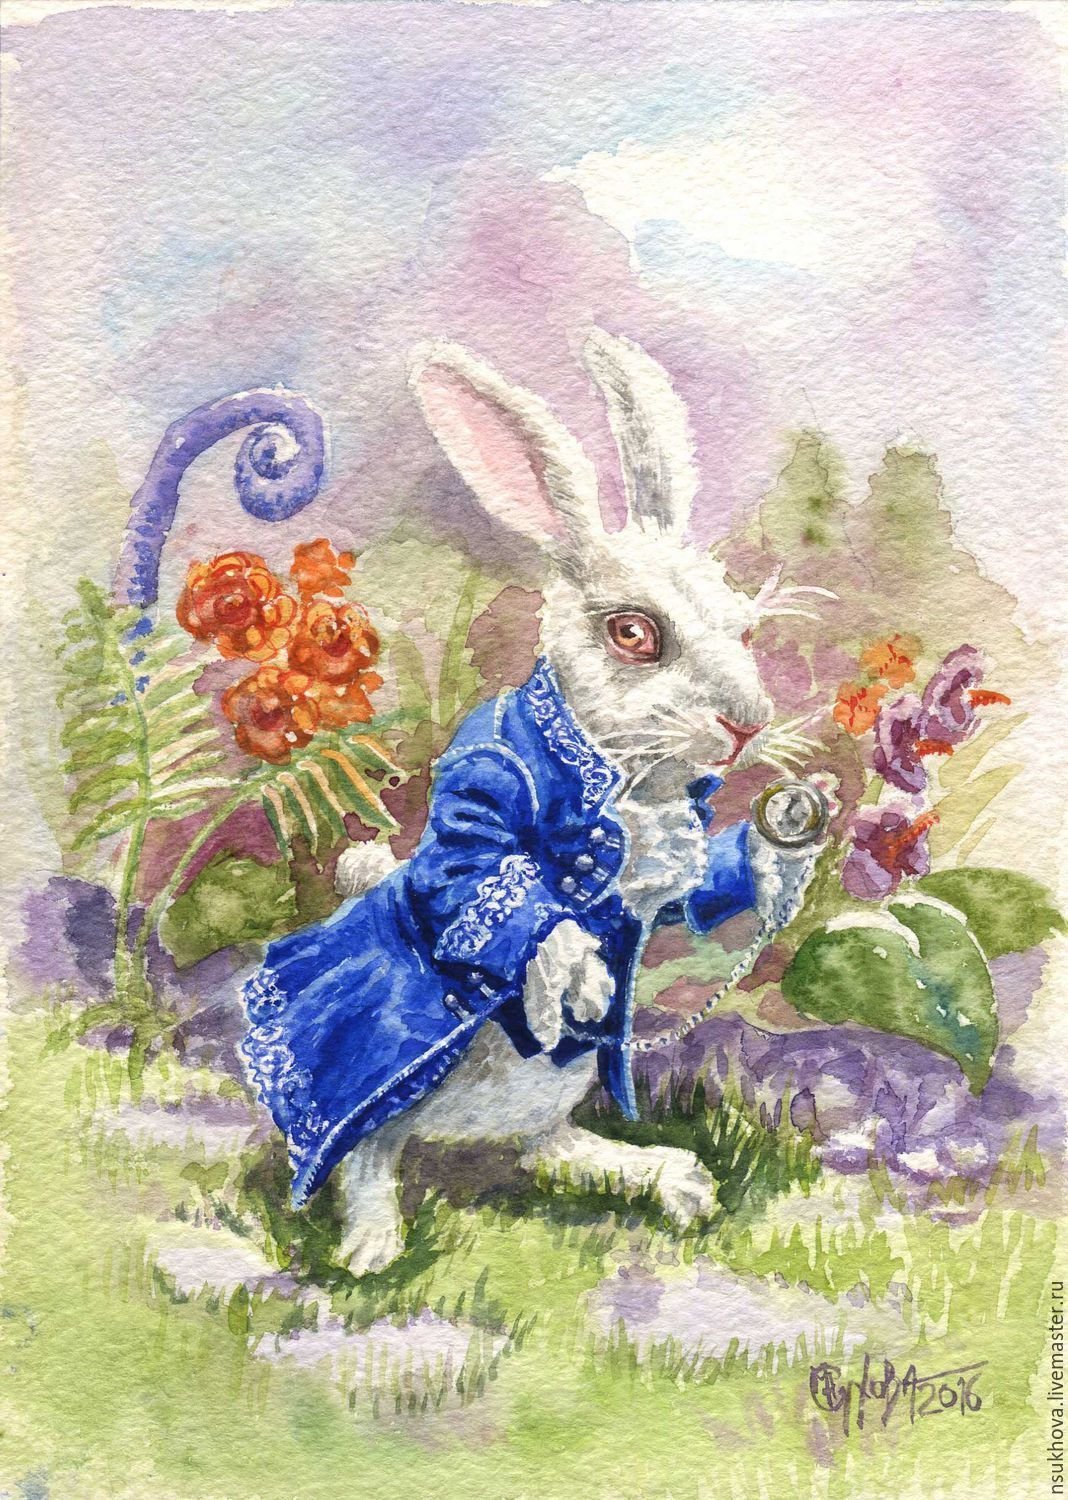 Кролик из сказки Алиса в стране чудес